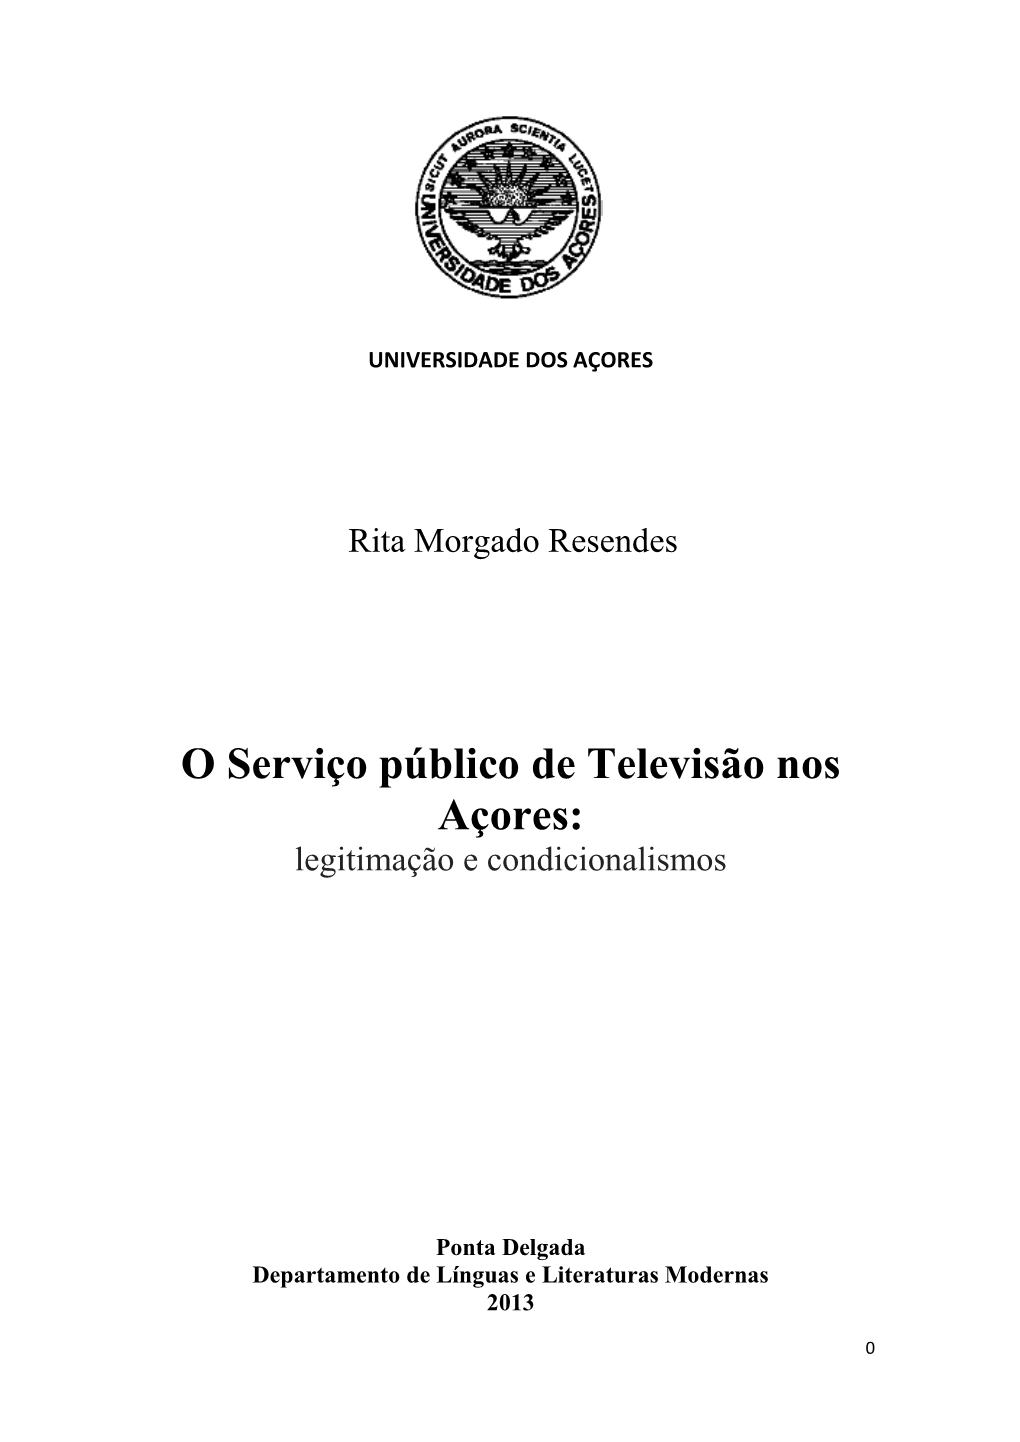 O Serviço Público De Televisão Nos Açores: Legitimação E Condicionalismos